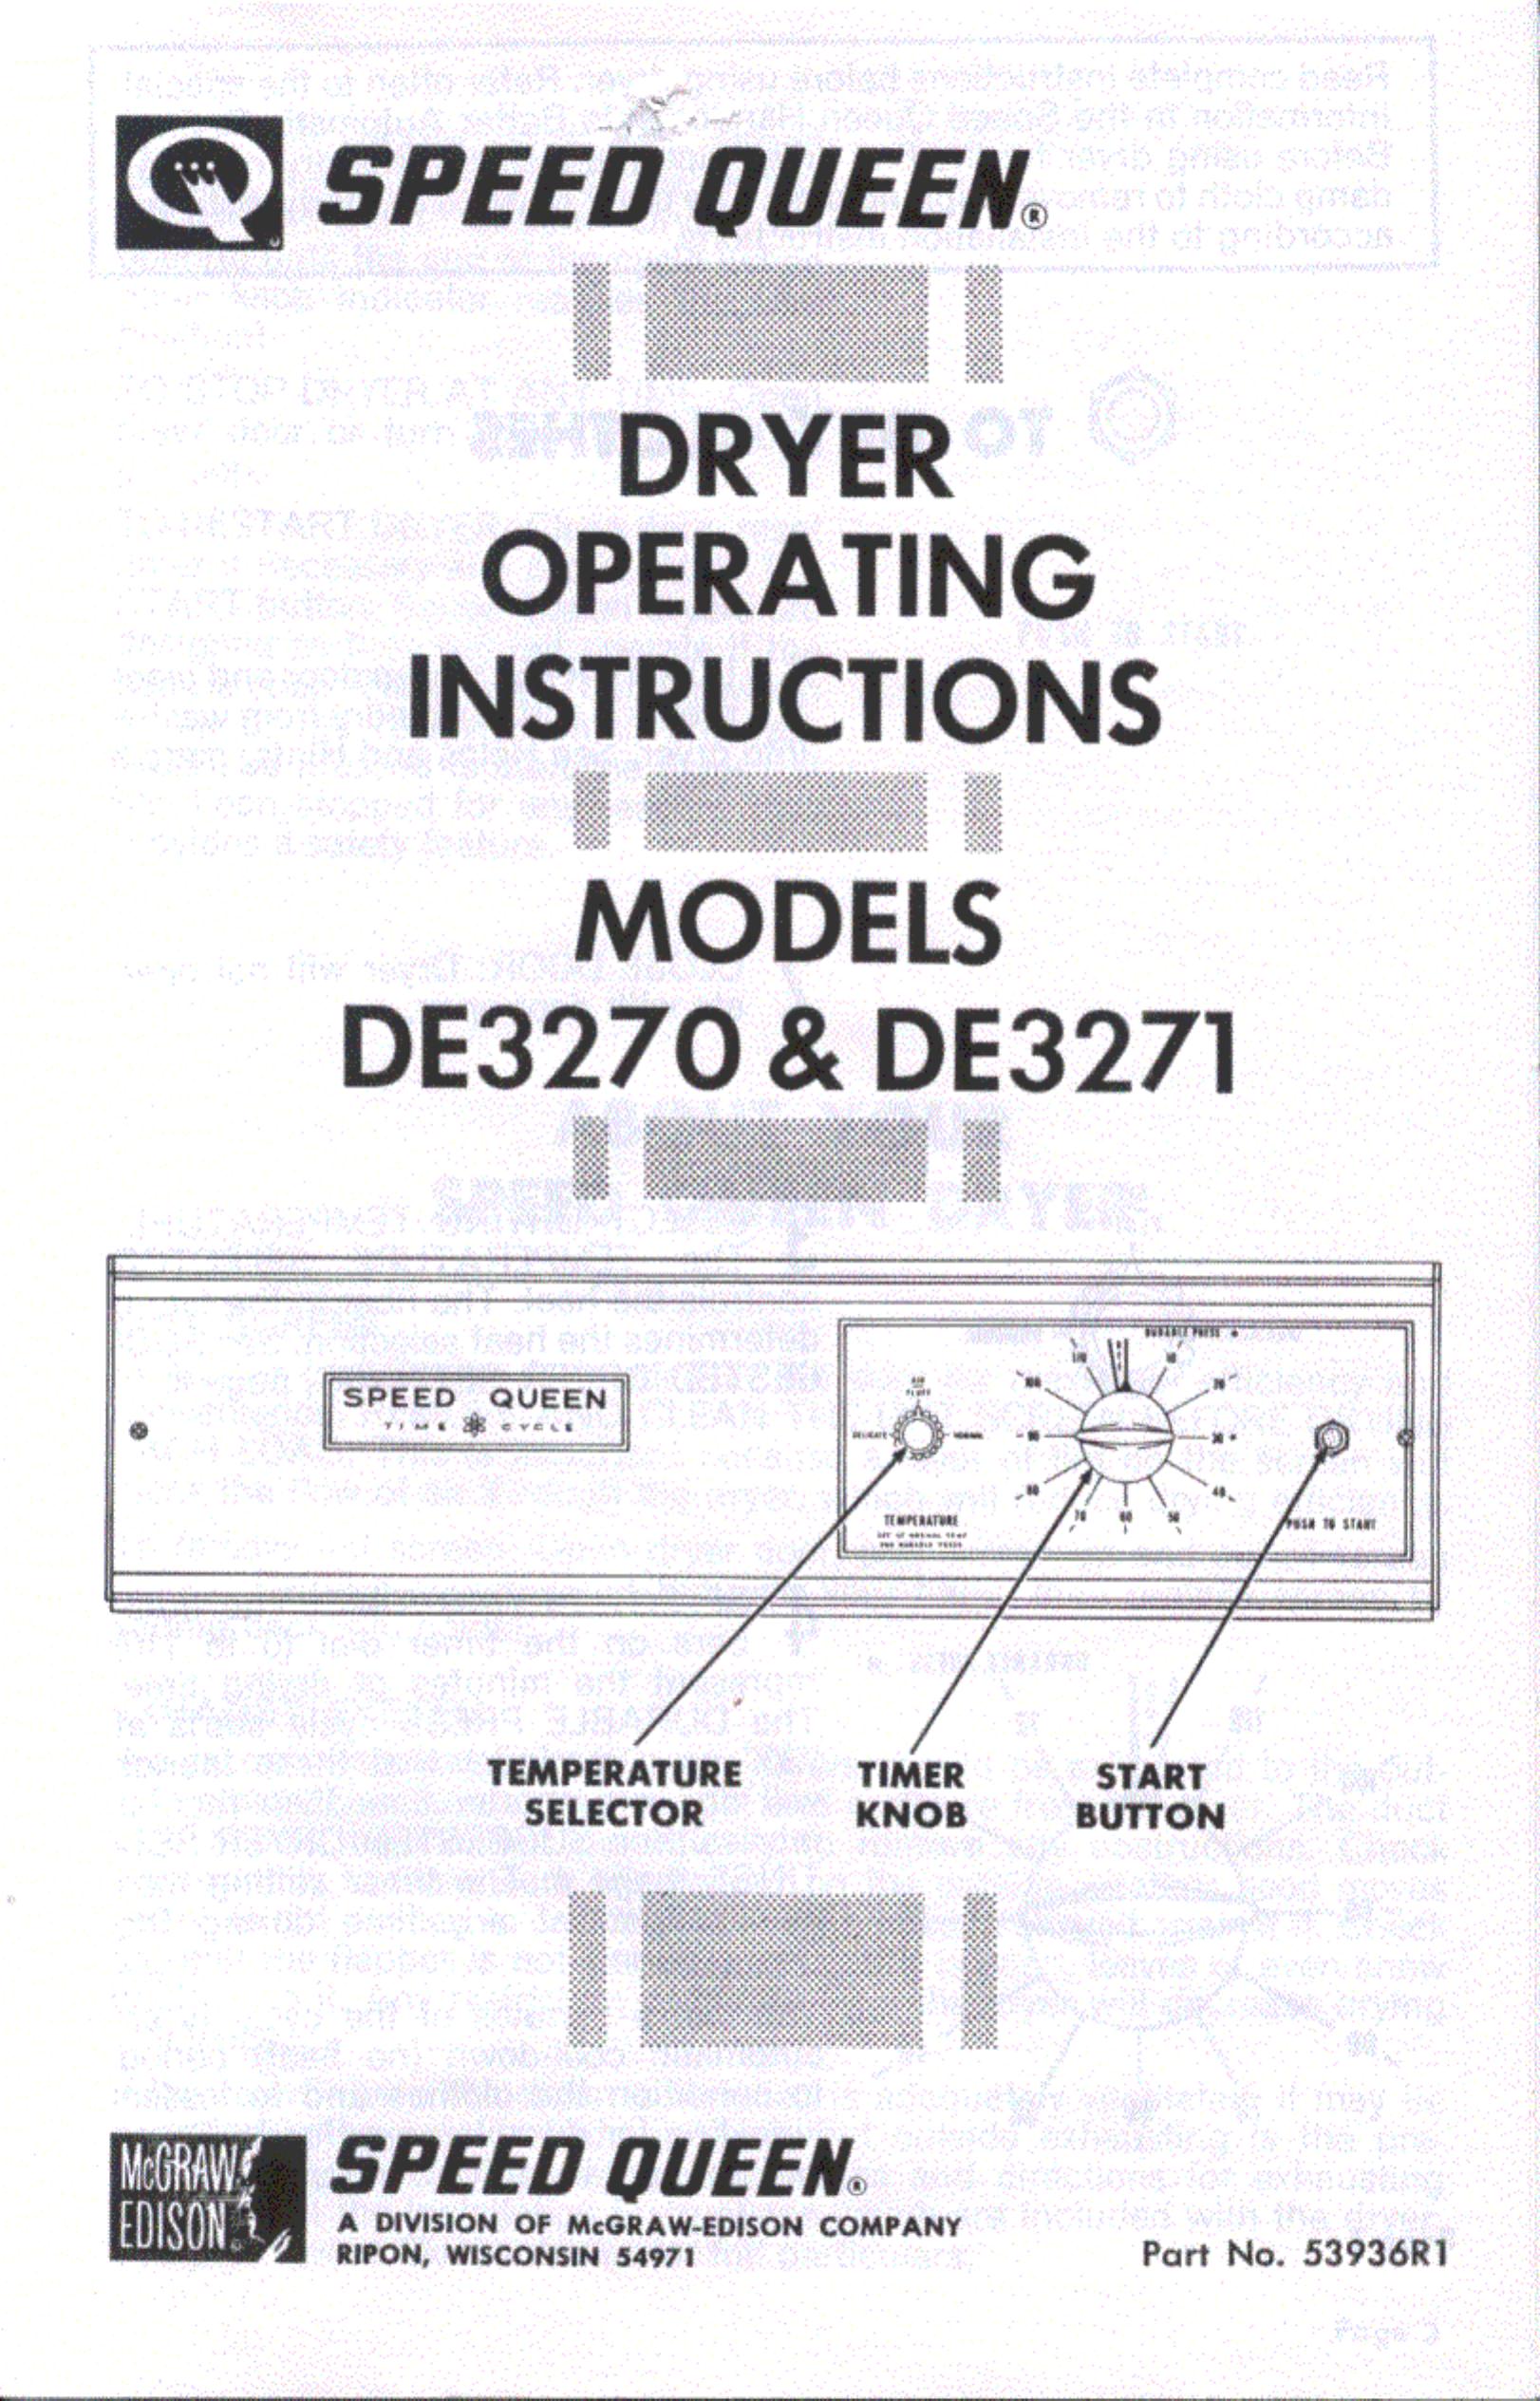 Speed Queen DE3271 Clothes Dryer User Manual